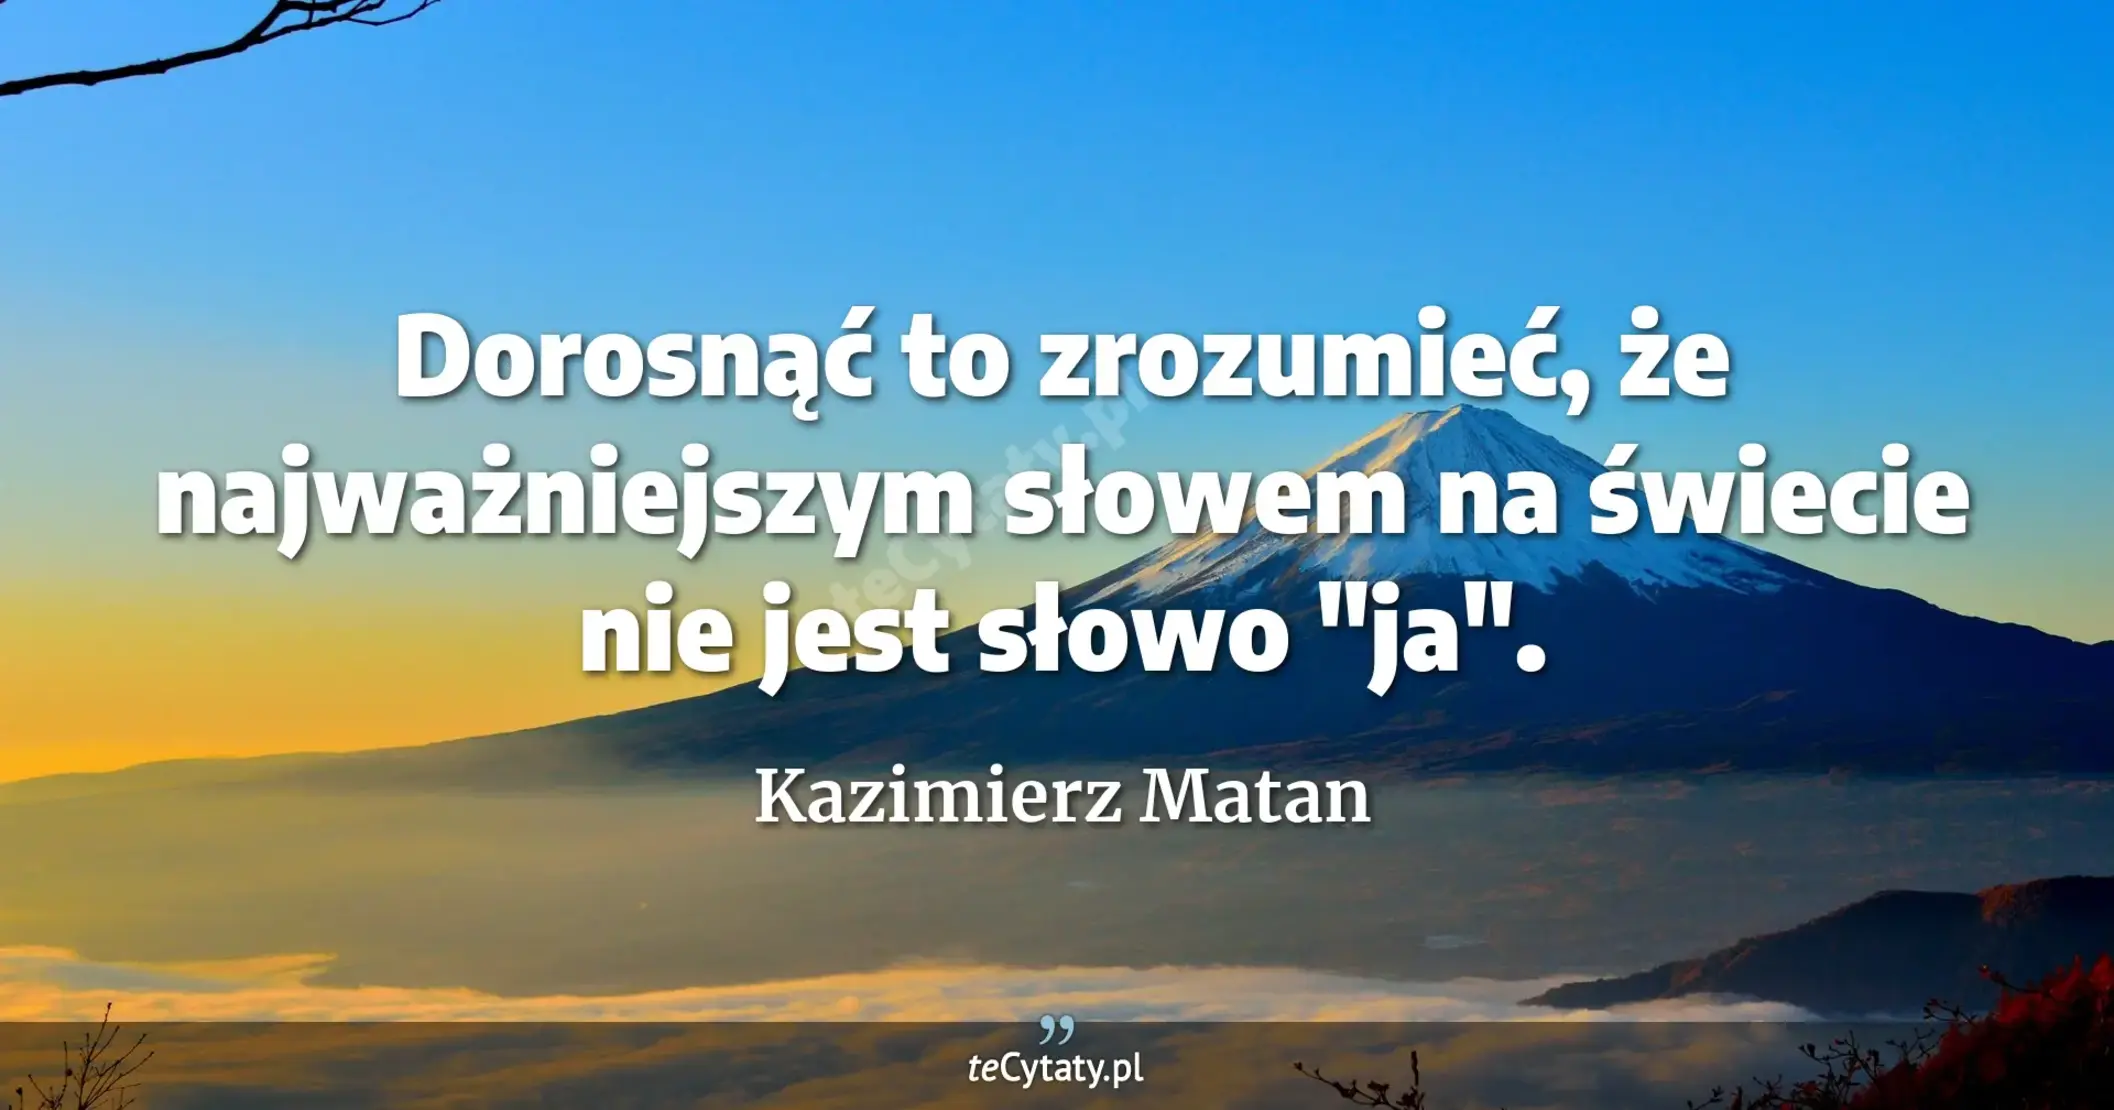 Dorosnąć to zrozumieć, że najważniejszym słowem na świecie nie jest słowo "ja". - Kazimierz Matan